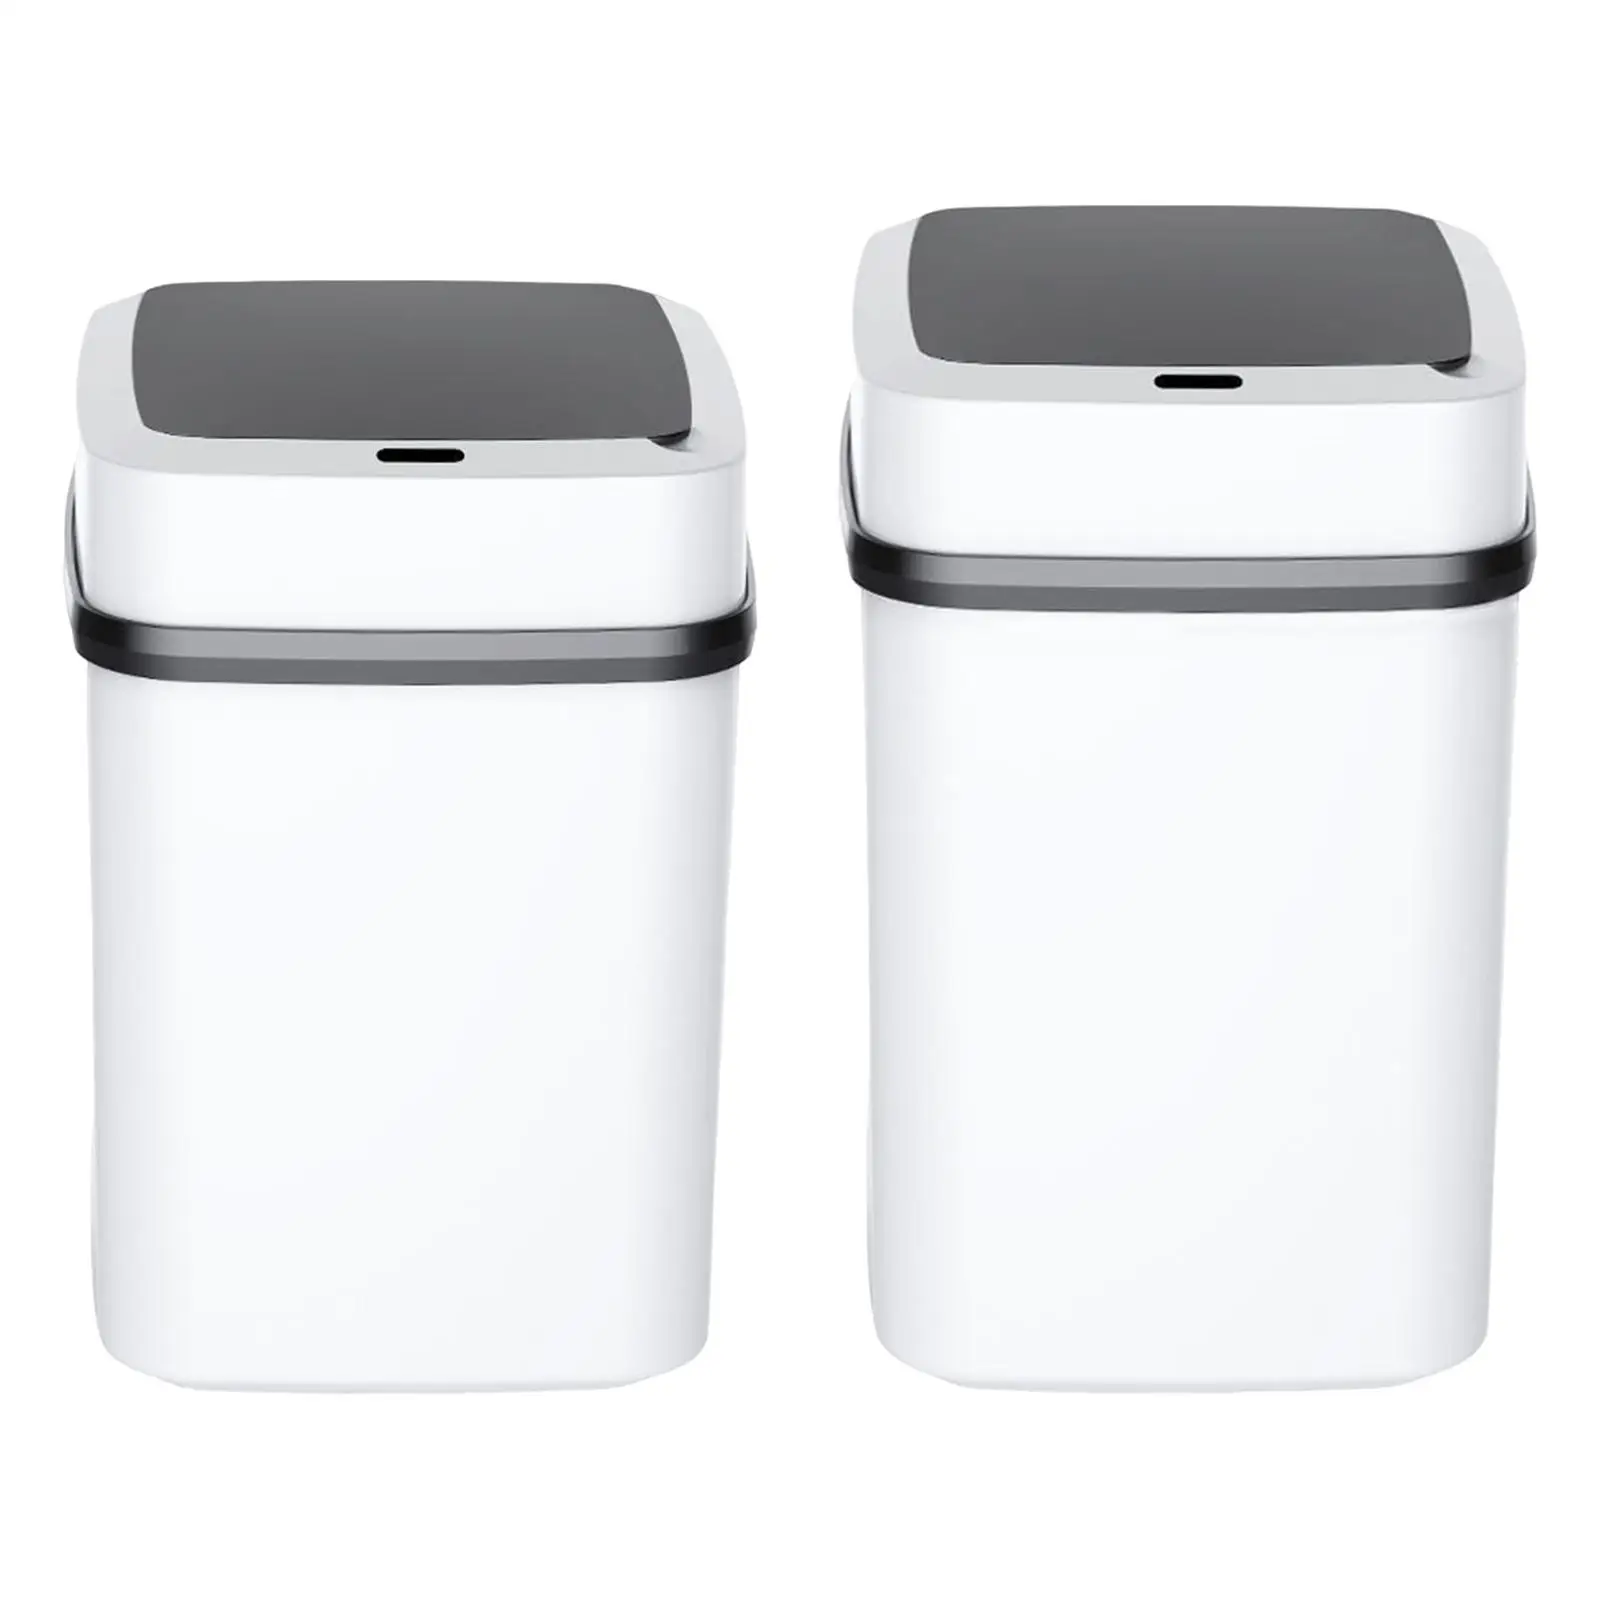 Smart Motion Sensor Trash Bin Recycling Bin Automatic Open Lid Wastebasket Garbage Bin for Hotel RV Office Living Room Home